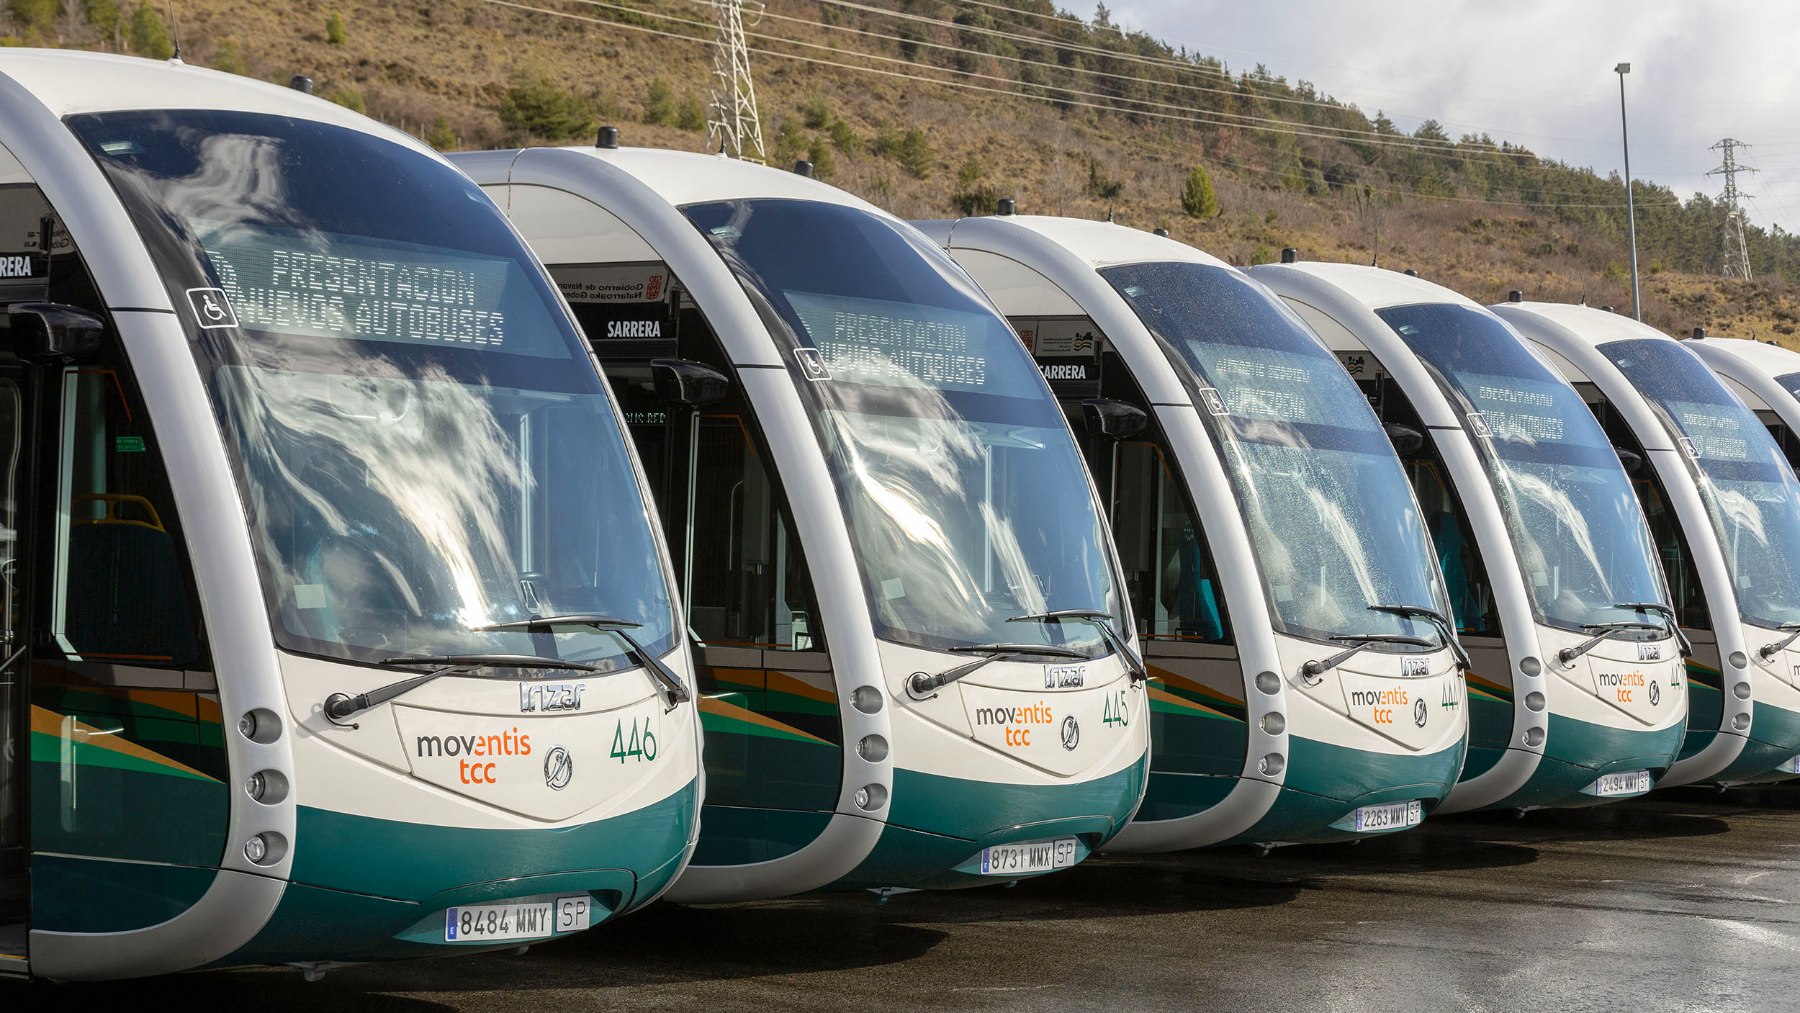 Presentación de autobuses eléctricos en Pamplona